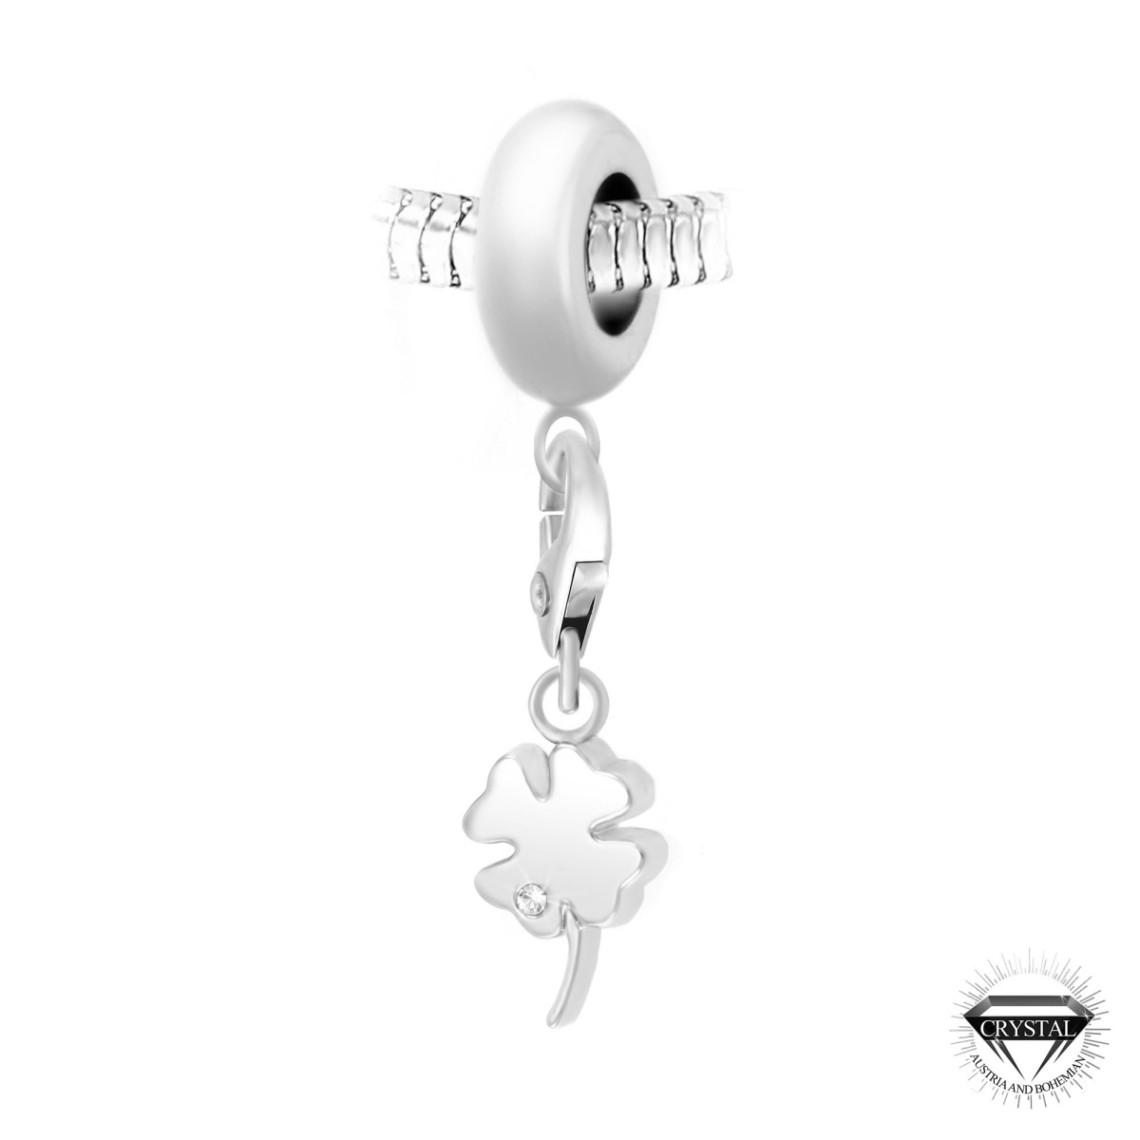 So Charm Bijoux Charm perle trèfle orné de cristaux Swarovski par SC Crystal Paris® BEA0044+CH0208-argent